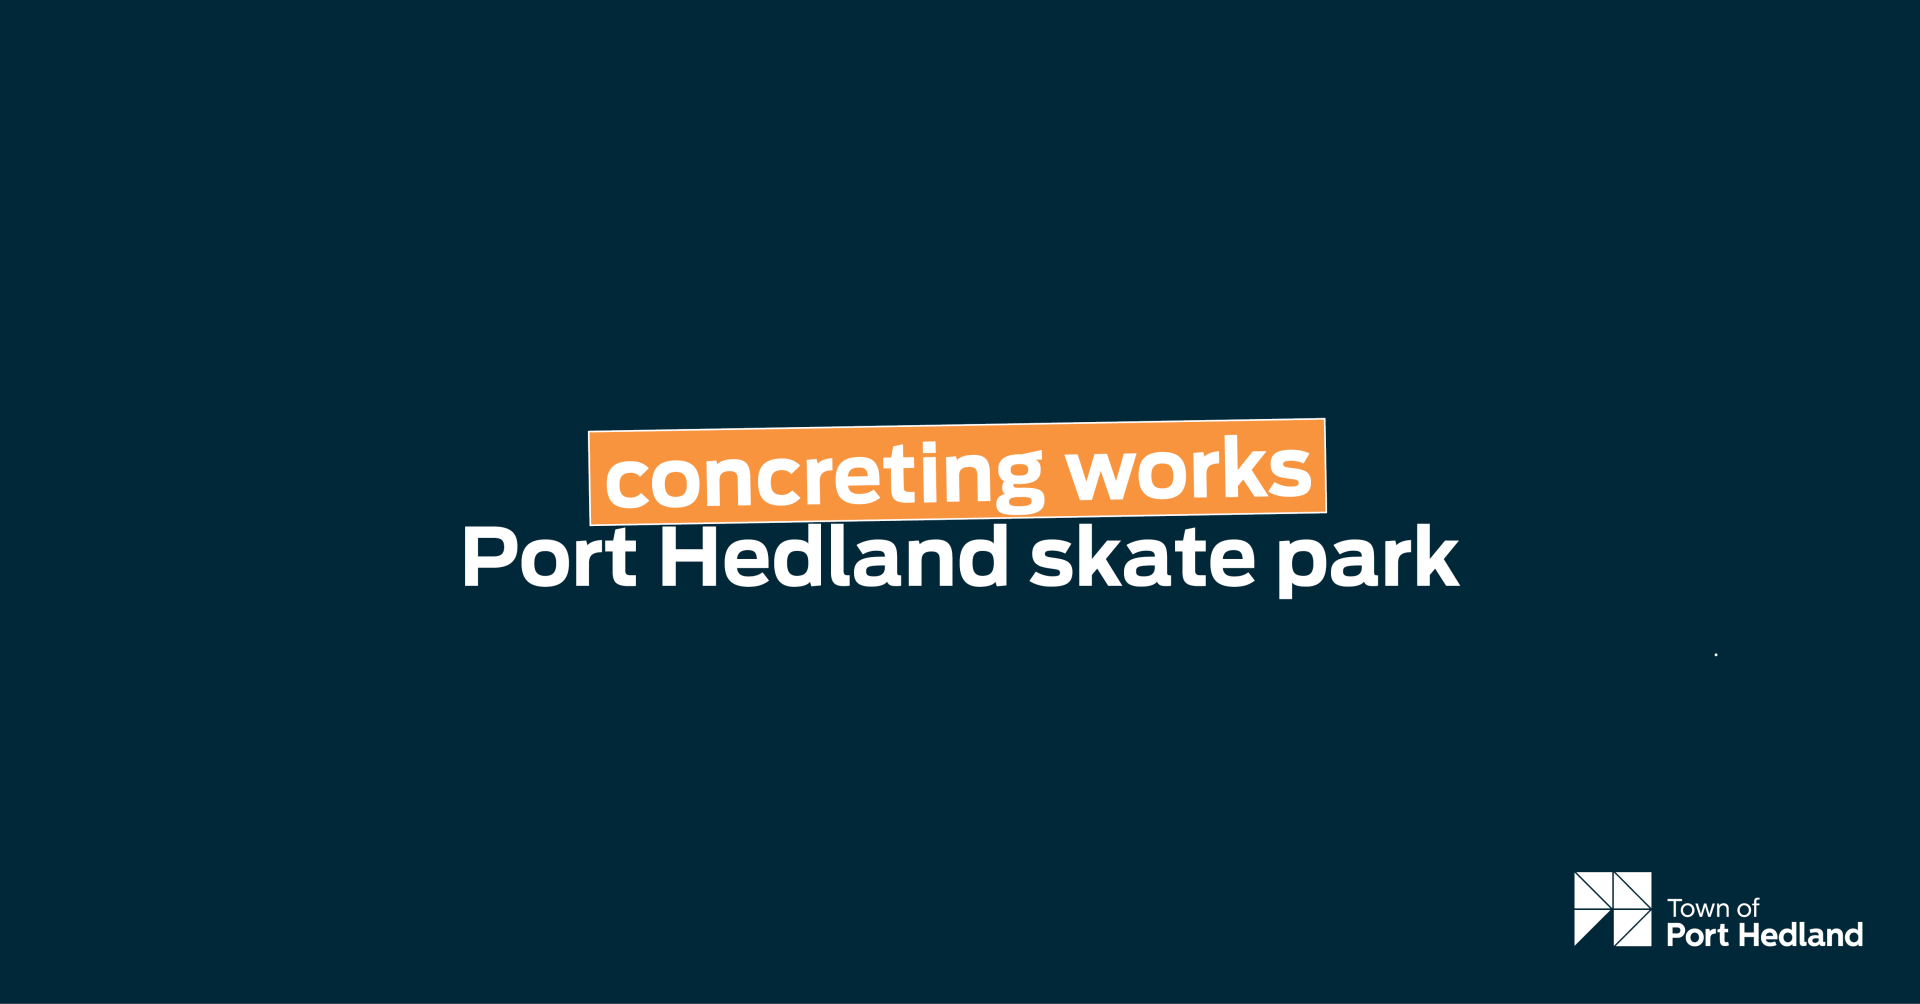 Concreting works around Port Hedland skate park